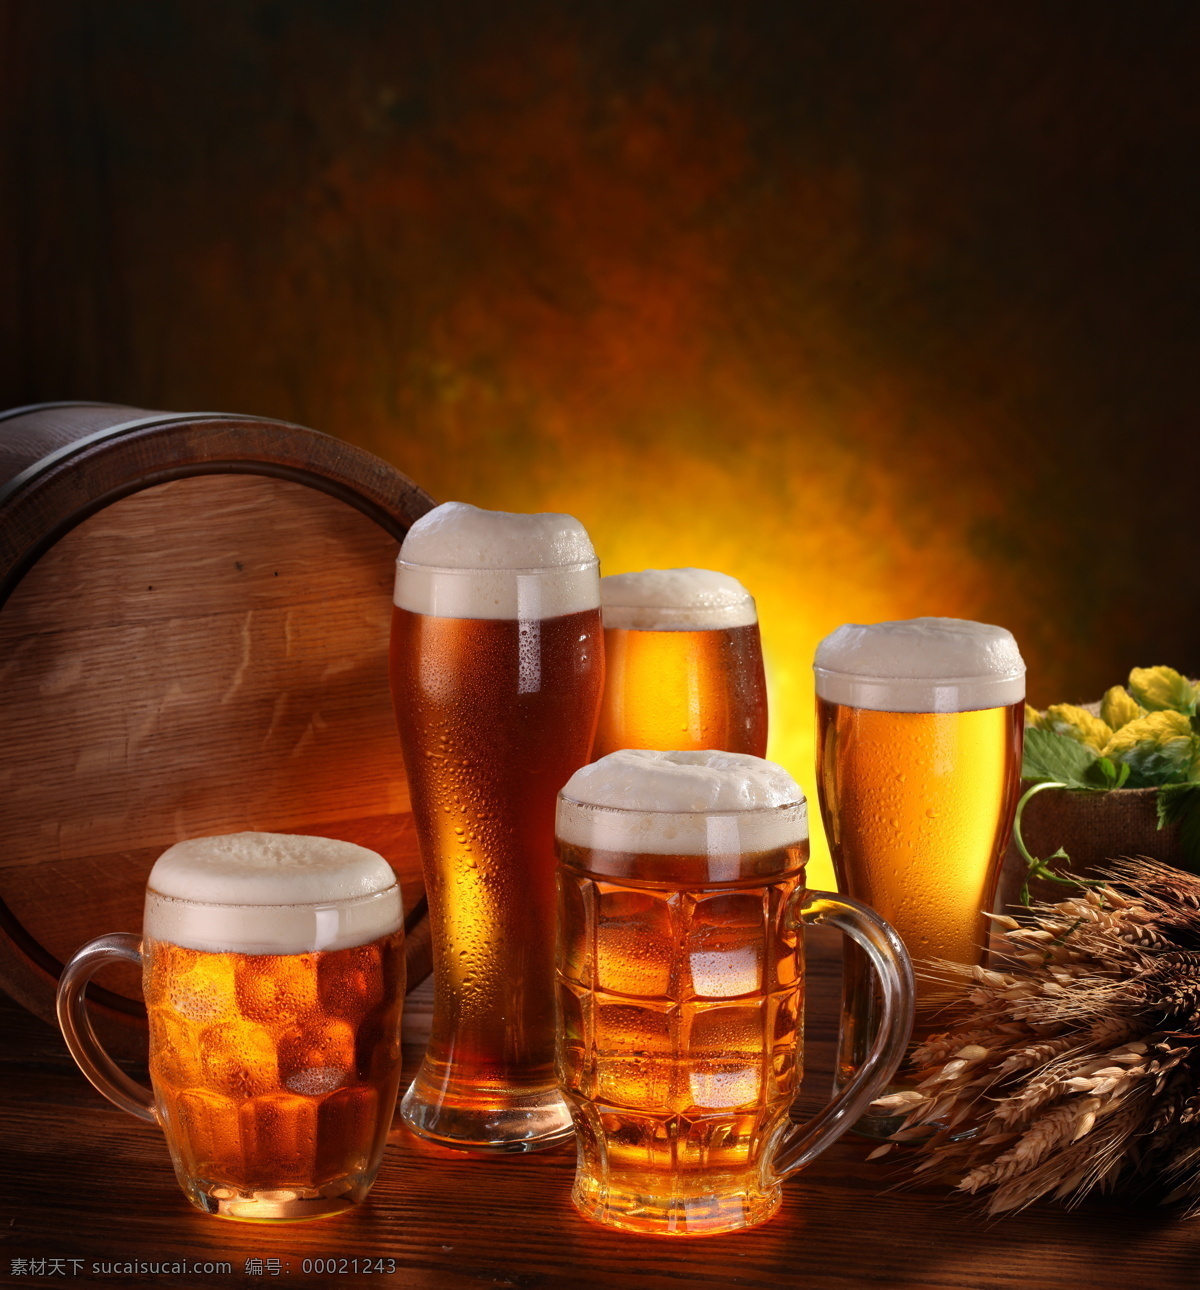 麦穗 啤酒花 啤酒 玻璃酒杯 啤酒杯子 酒瓶 酒桶 木桶 酒类图片 餐饮美食